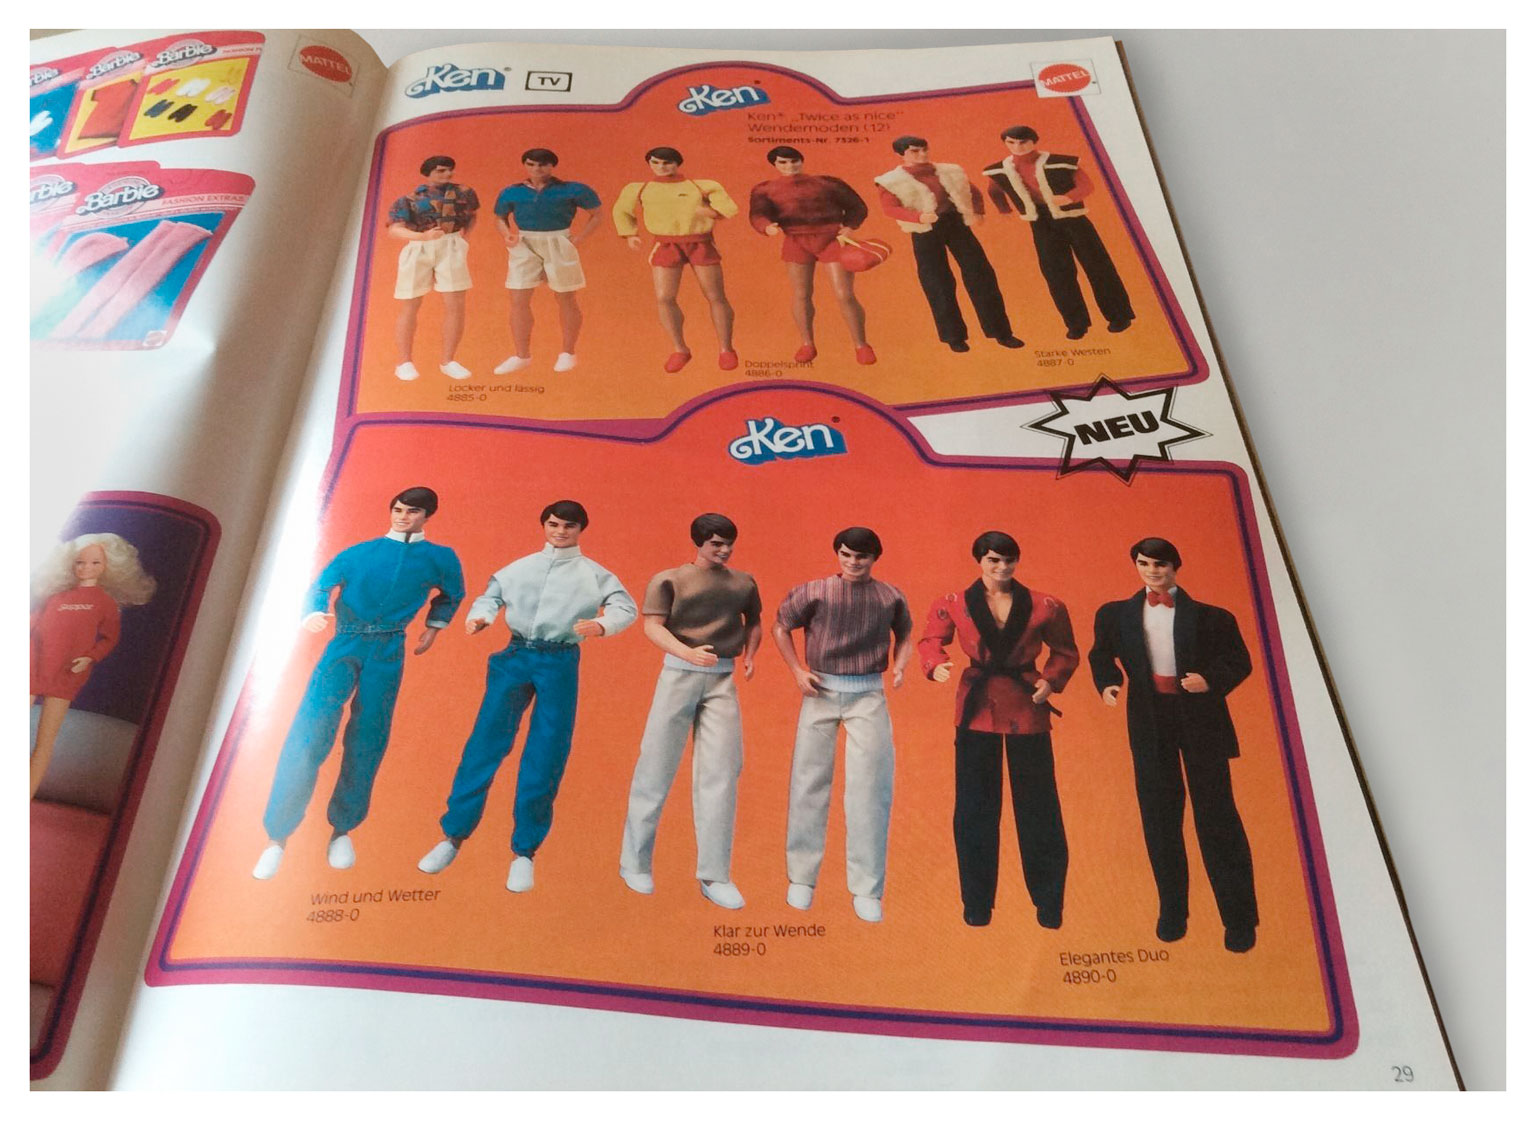 From 1984 German Mattel catalogue